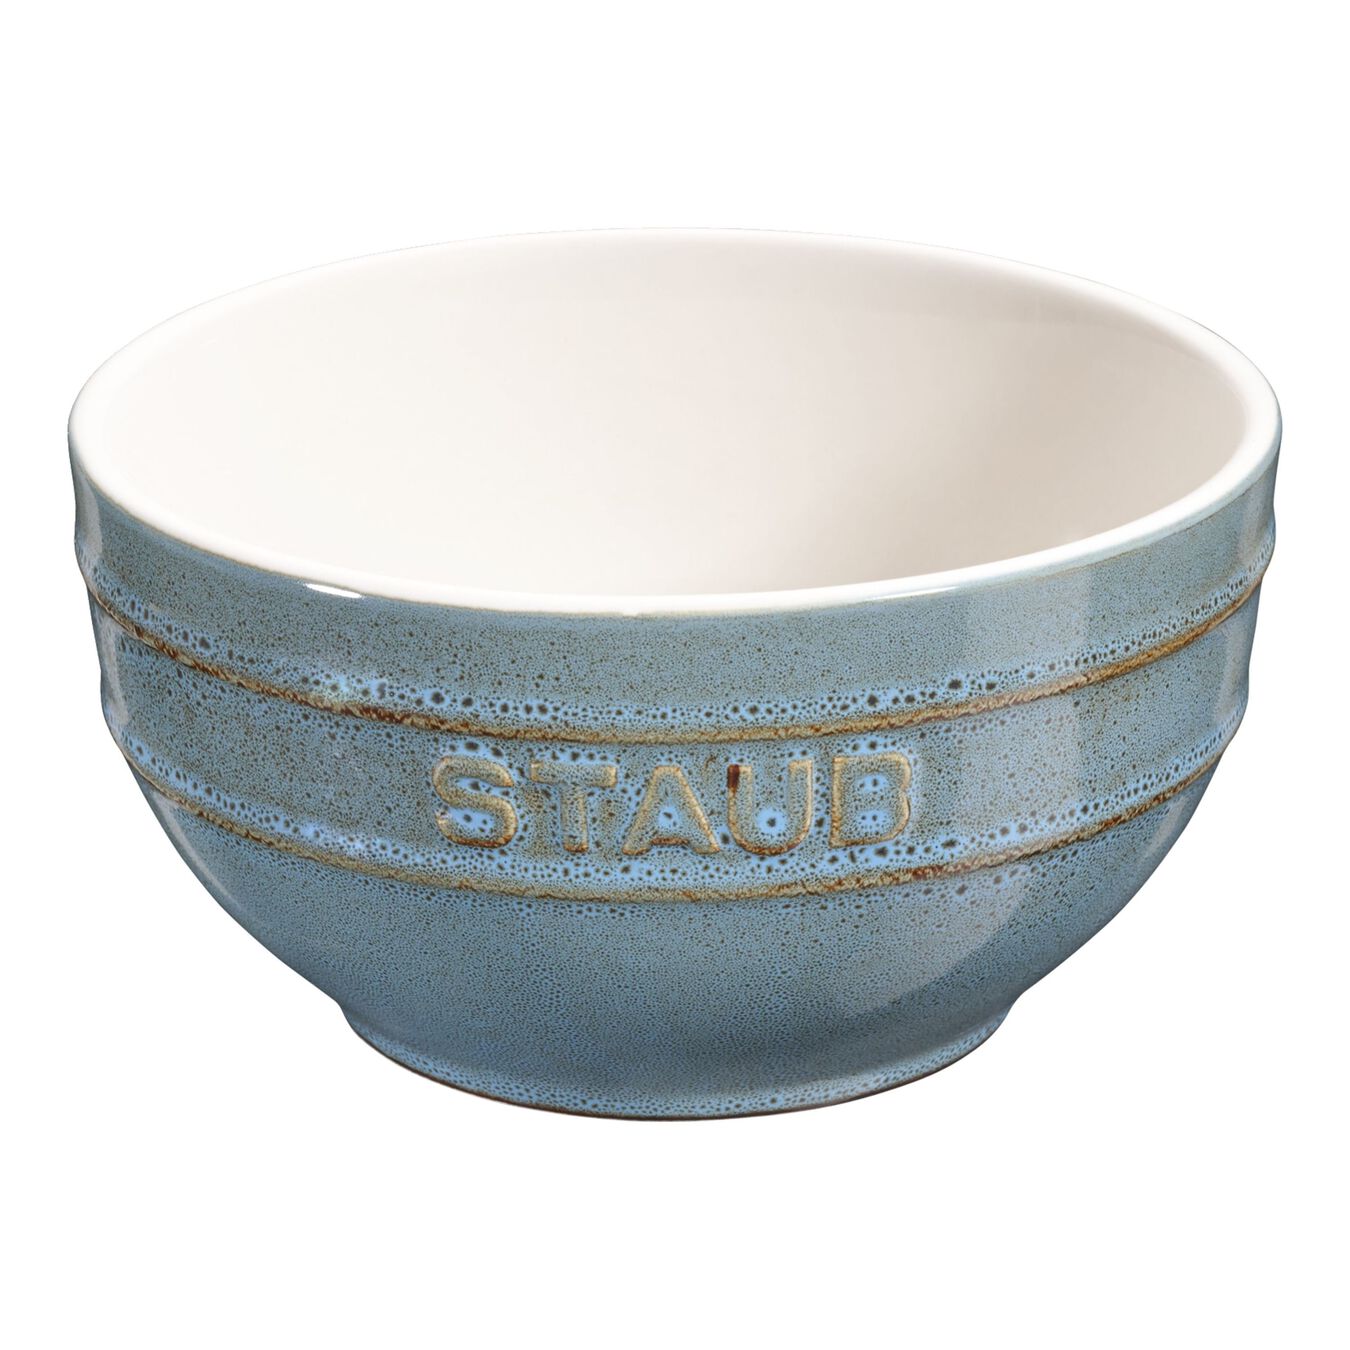 12 cm round Ceramic Bowl ancient-turquoise,,large 1